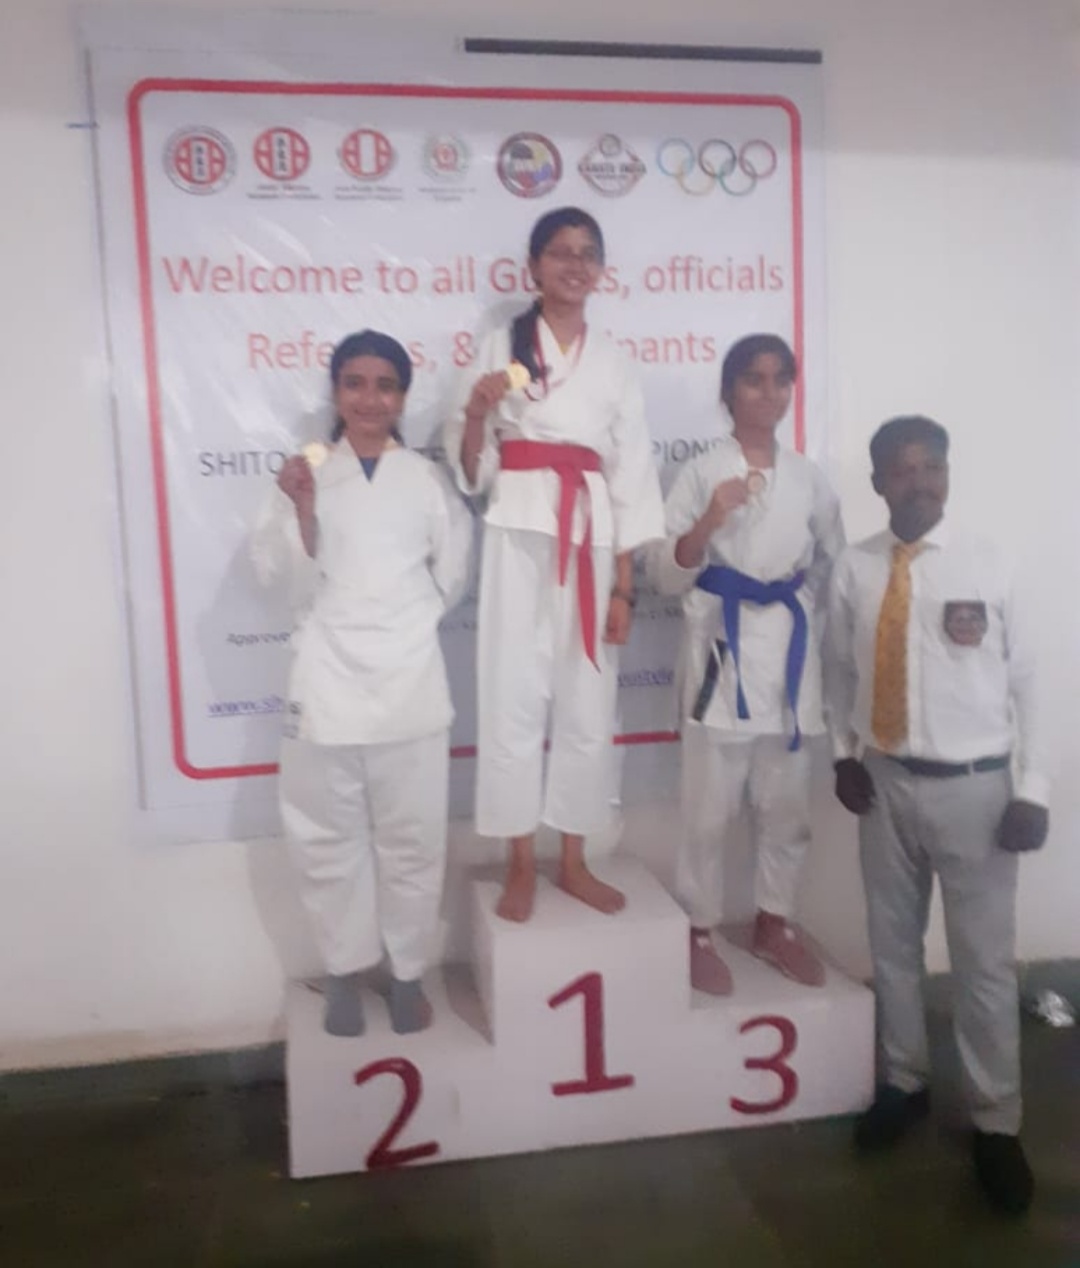 तनिष्का त्रिपाठी ने राज्य स्तरीय कराटे प्रतियोगिता में द्वितीय स्थान प्राप्त कर बढ़ाया गोरखपुर का नाम 